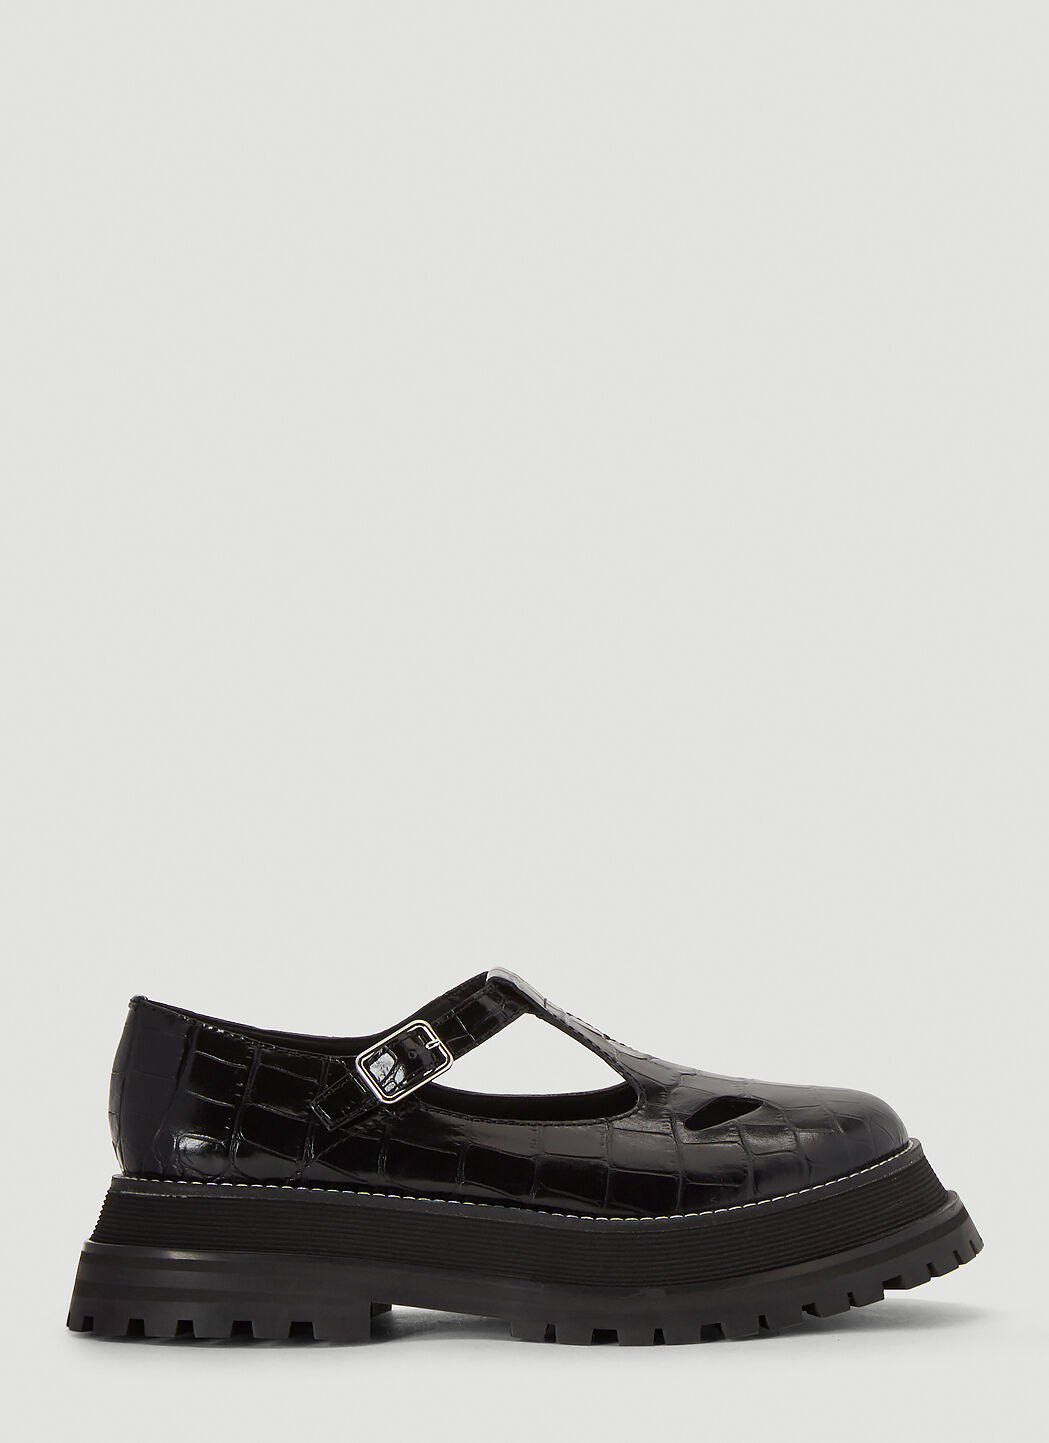 Saint Laurent Embossed Leather Mary Jane Shoes ブラック sla0238013